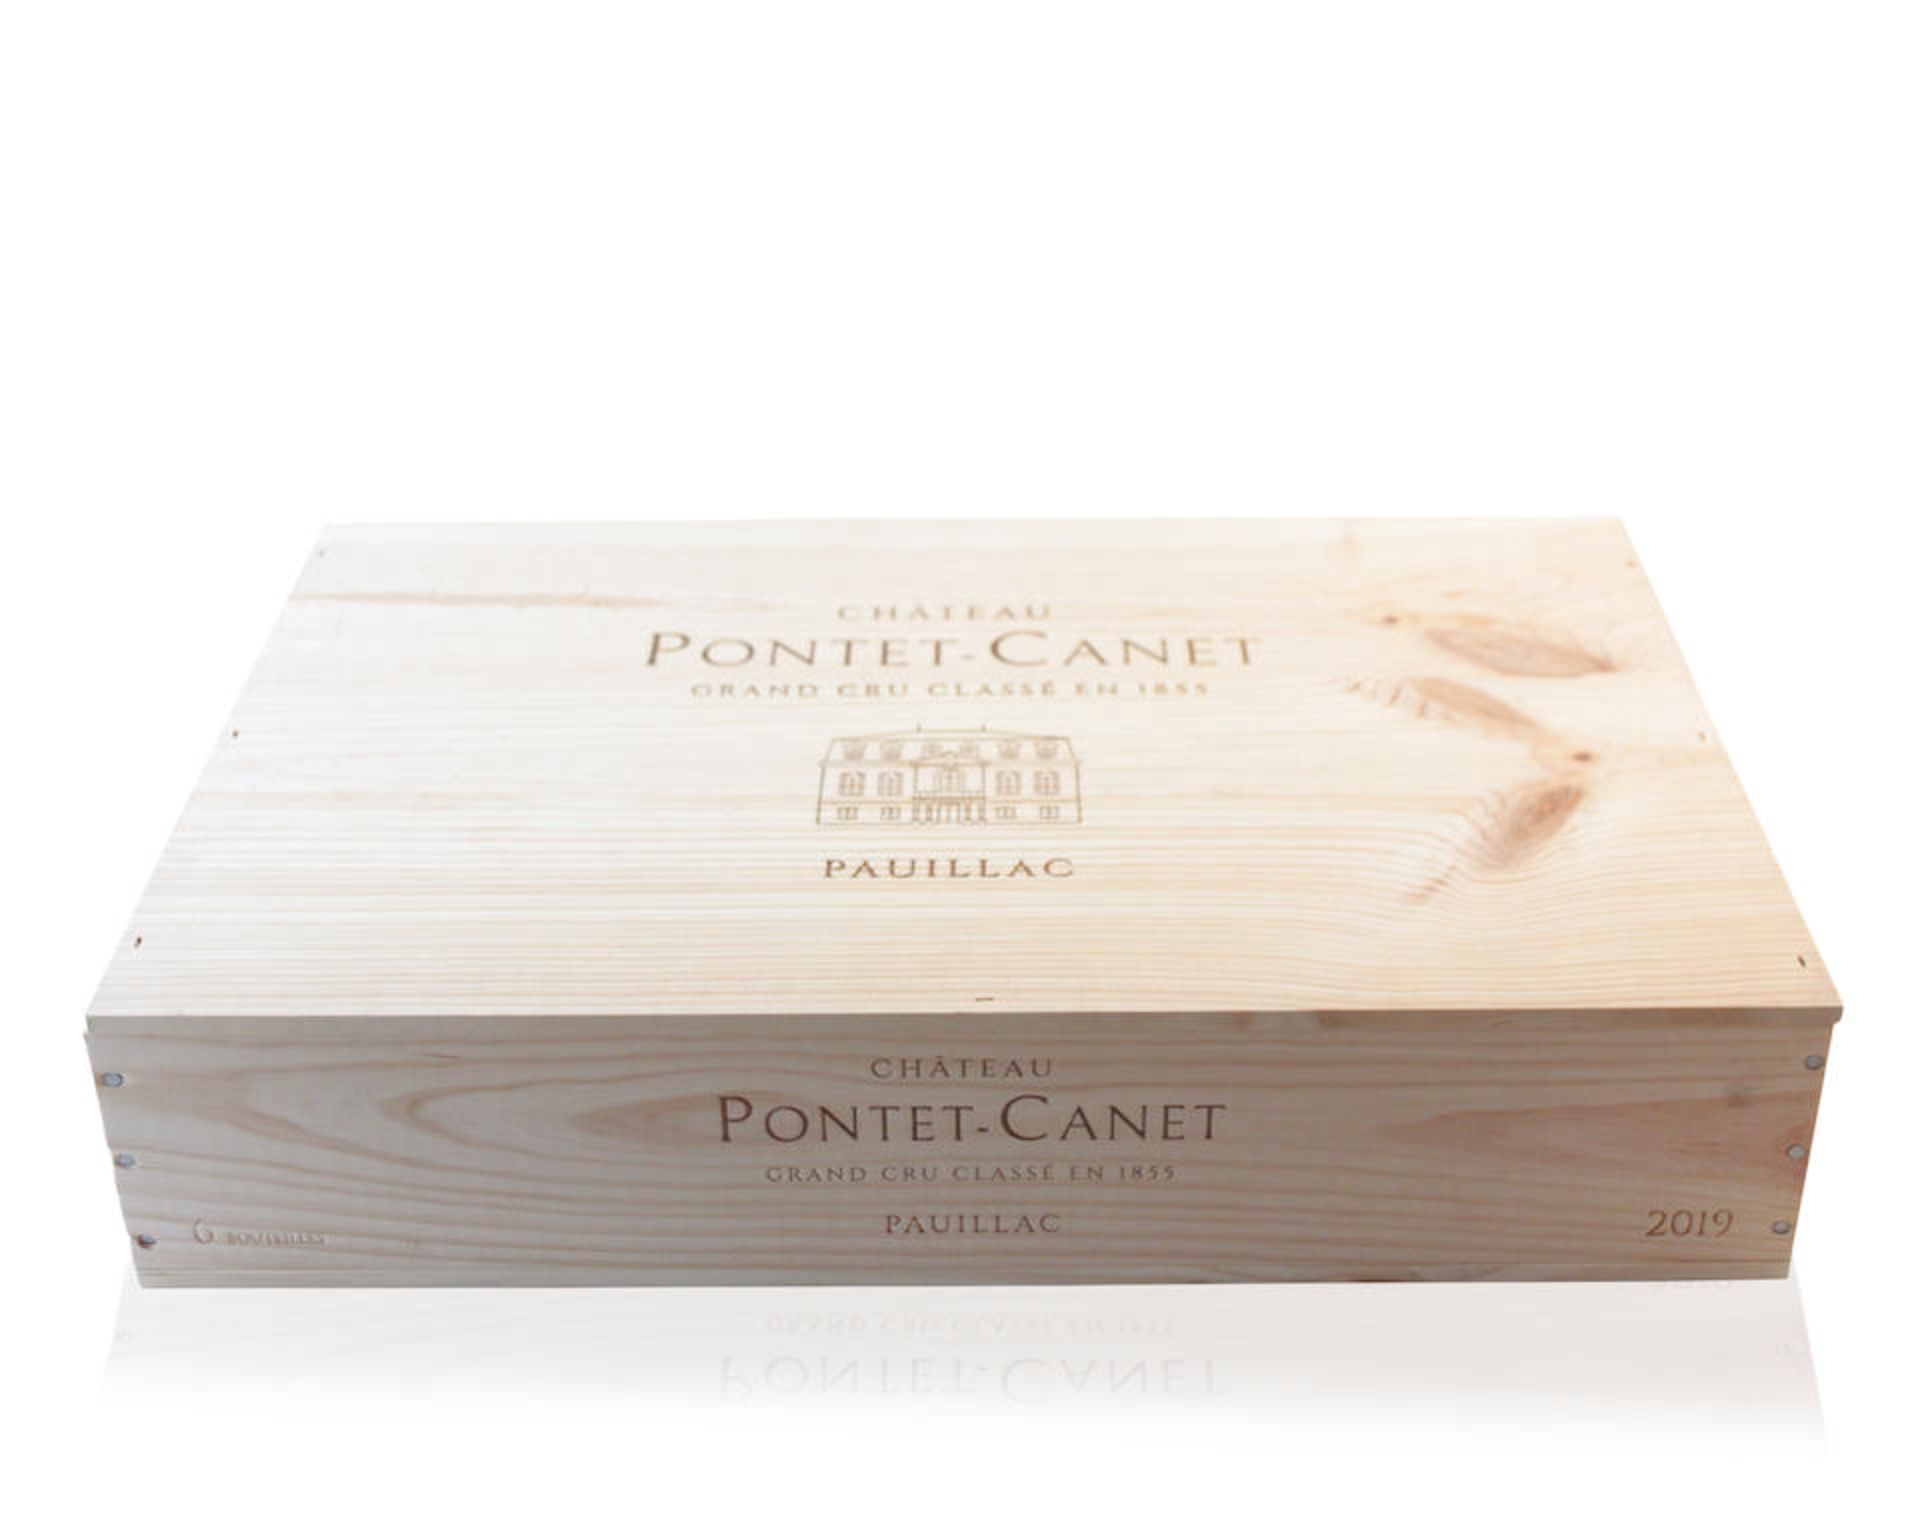 Château Pontet-Canet 2019, Pauillac 5me Cru Classé (18)